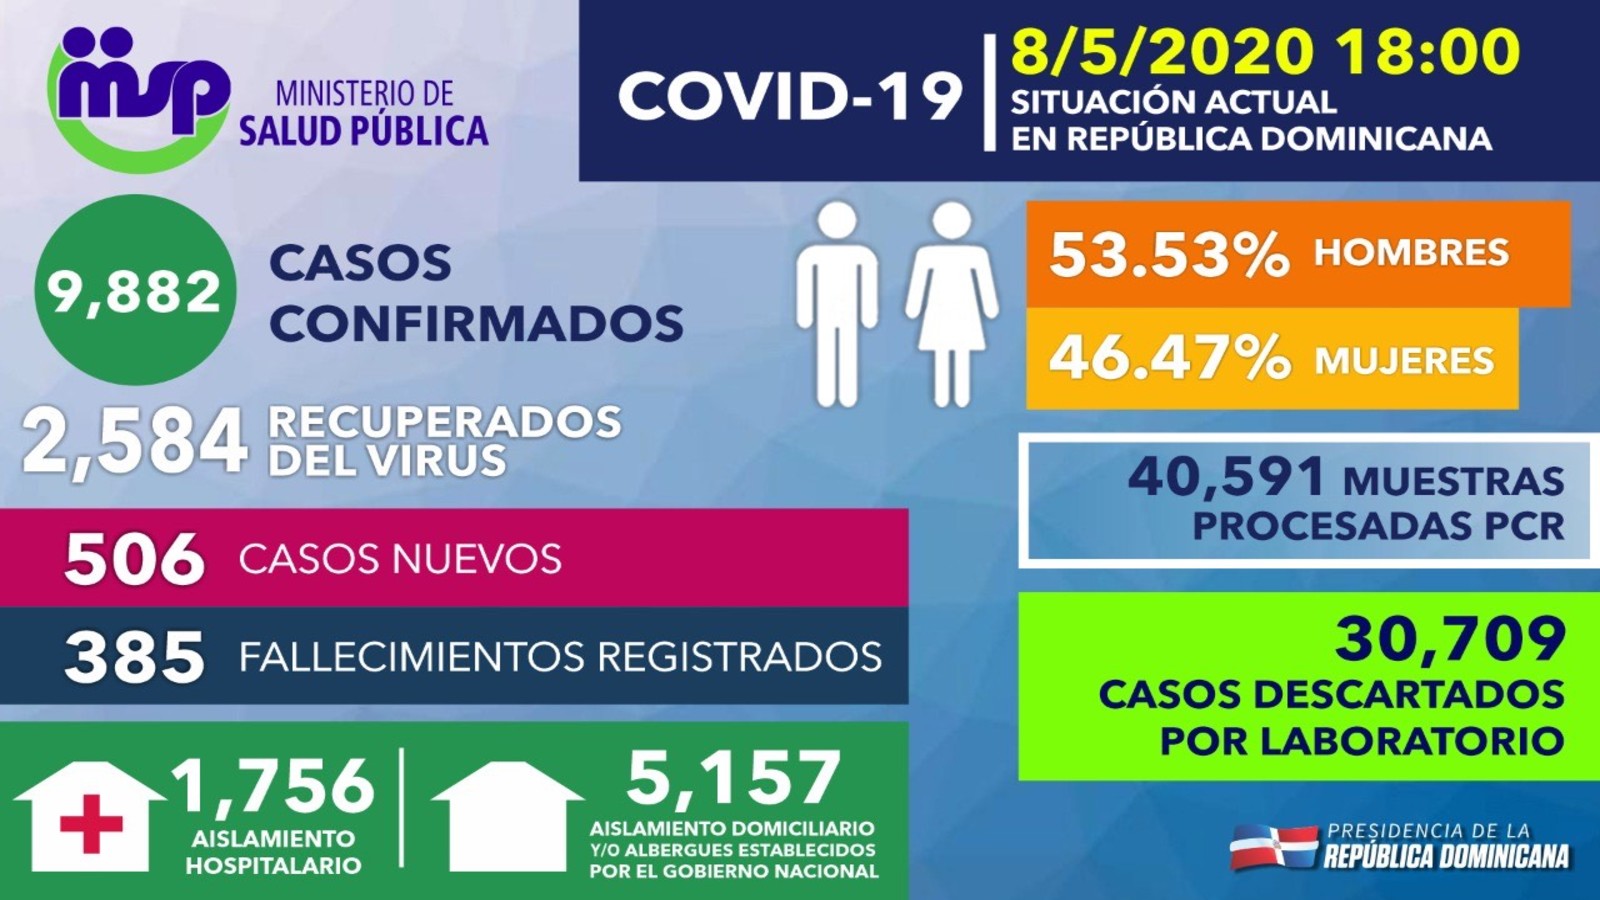 REPÚBLICA DOMINICANA: Personas recuperadas de COVID-19 en República Dominicana ascienden a 2,584; tasa letalidad se reduce a 3.90 %